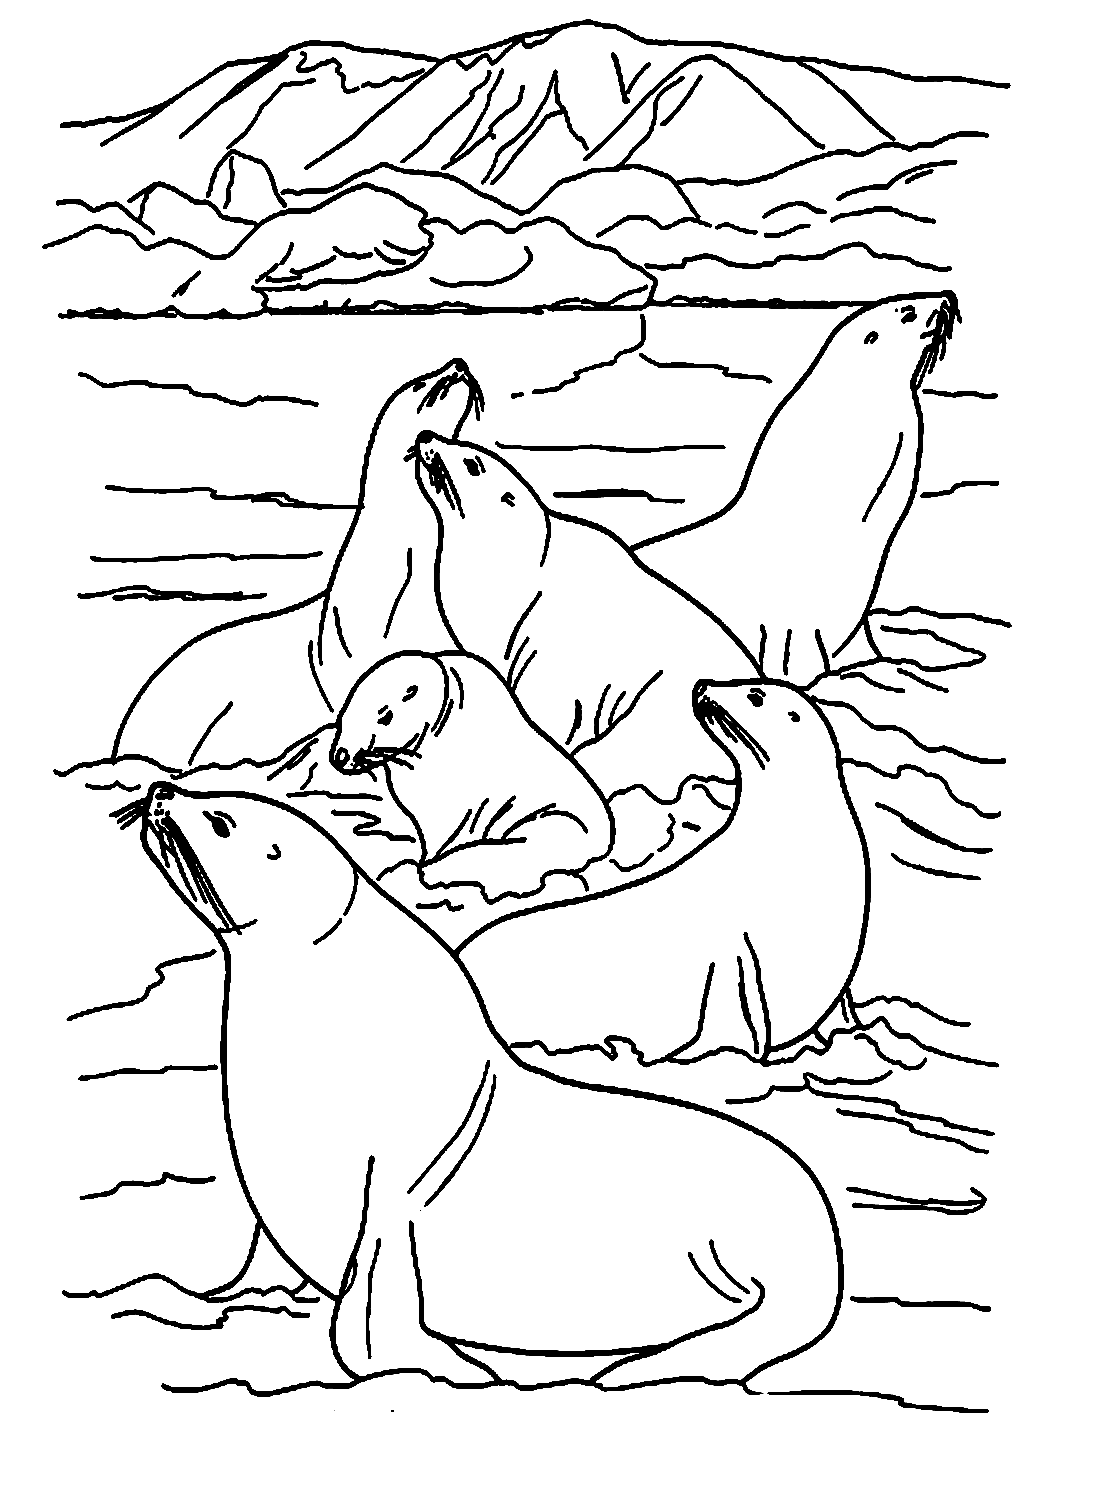 Vlot zeeleeuwen van Sea Lion